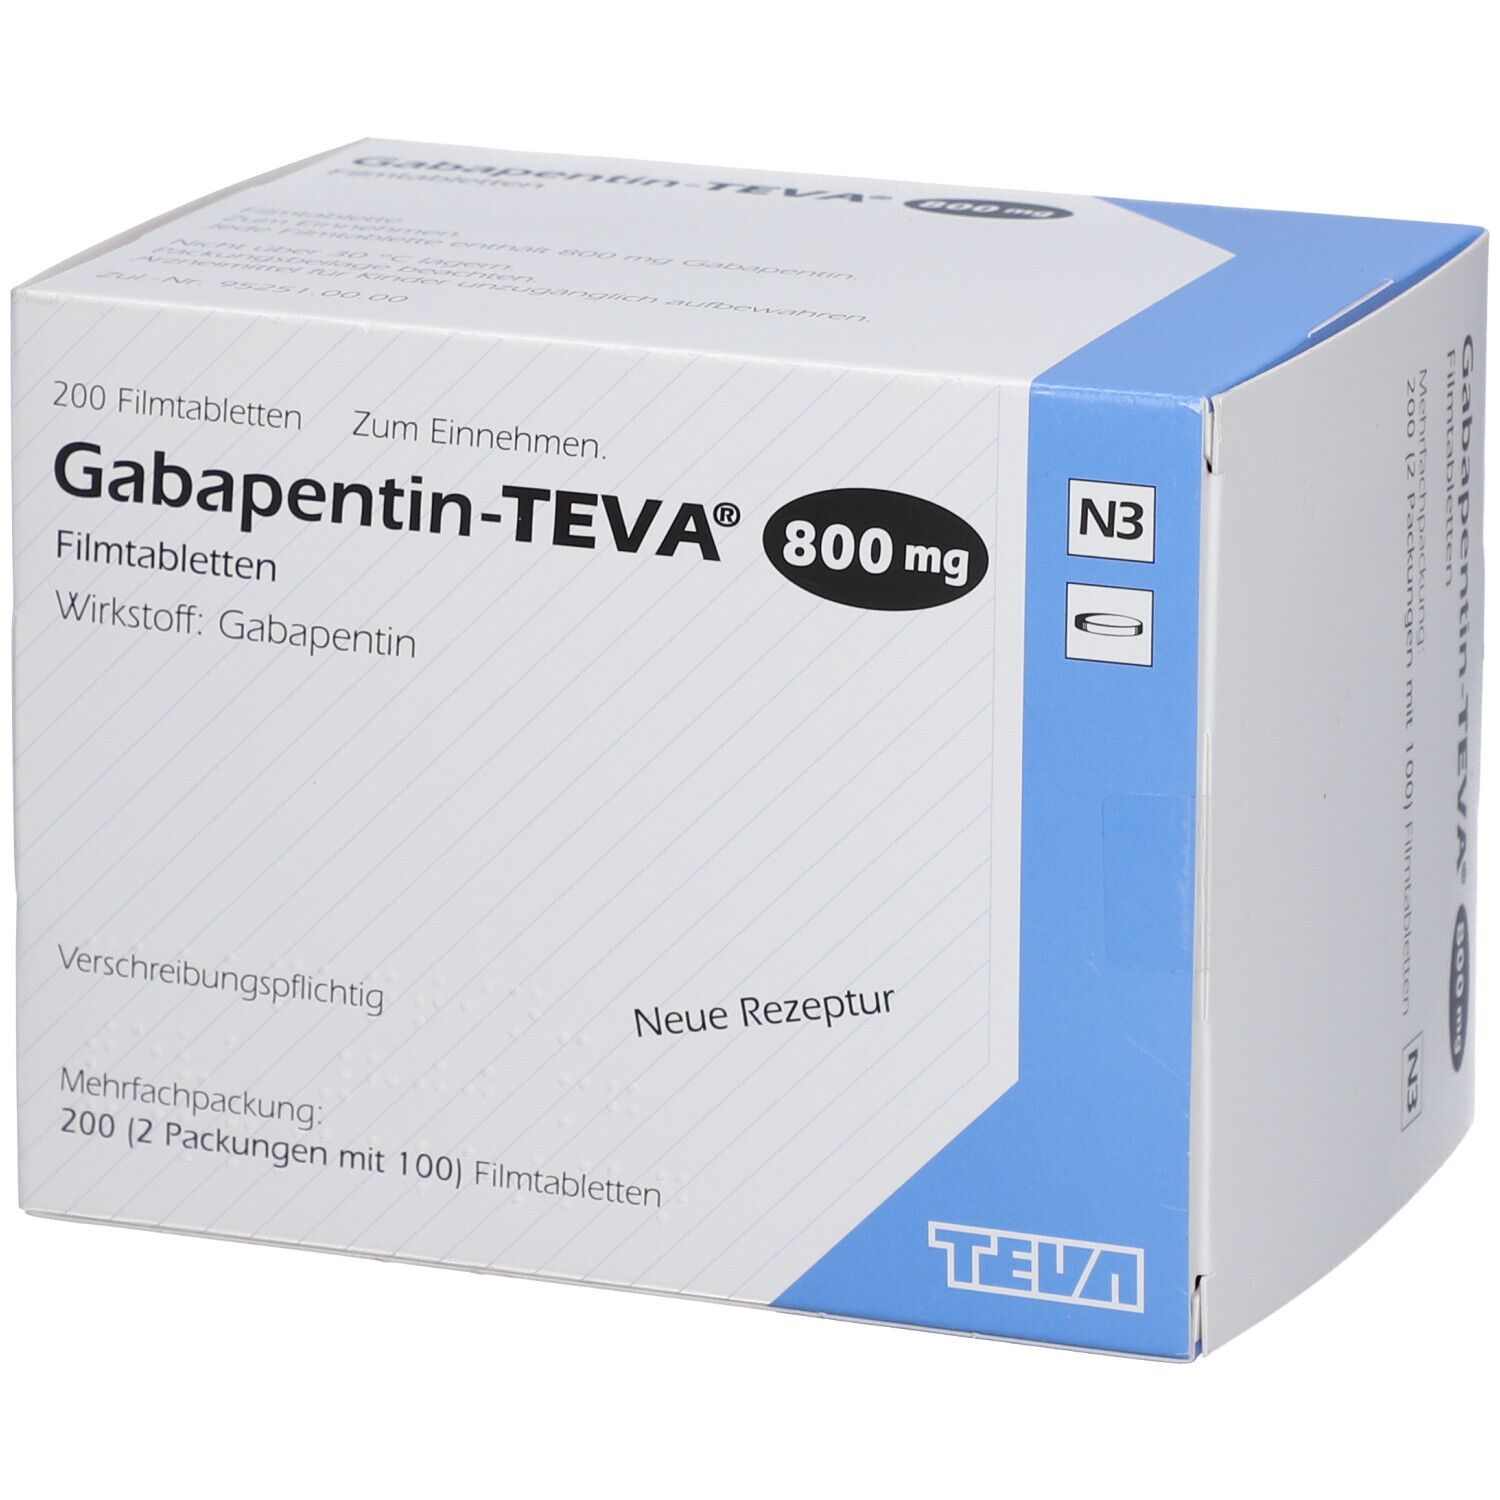 Габапентин 200. Нейронтин 800 мг. Таблетки от эпилепсии габапентин. Габапентин таблетки. Габапентин для собак